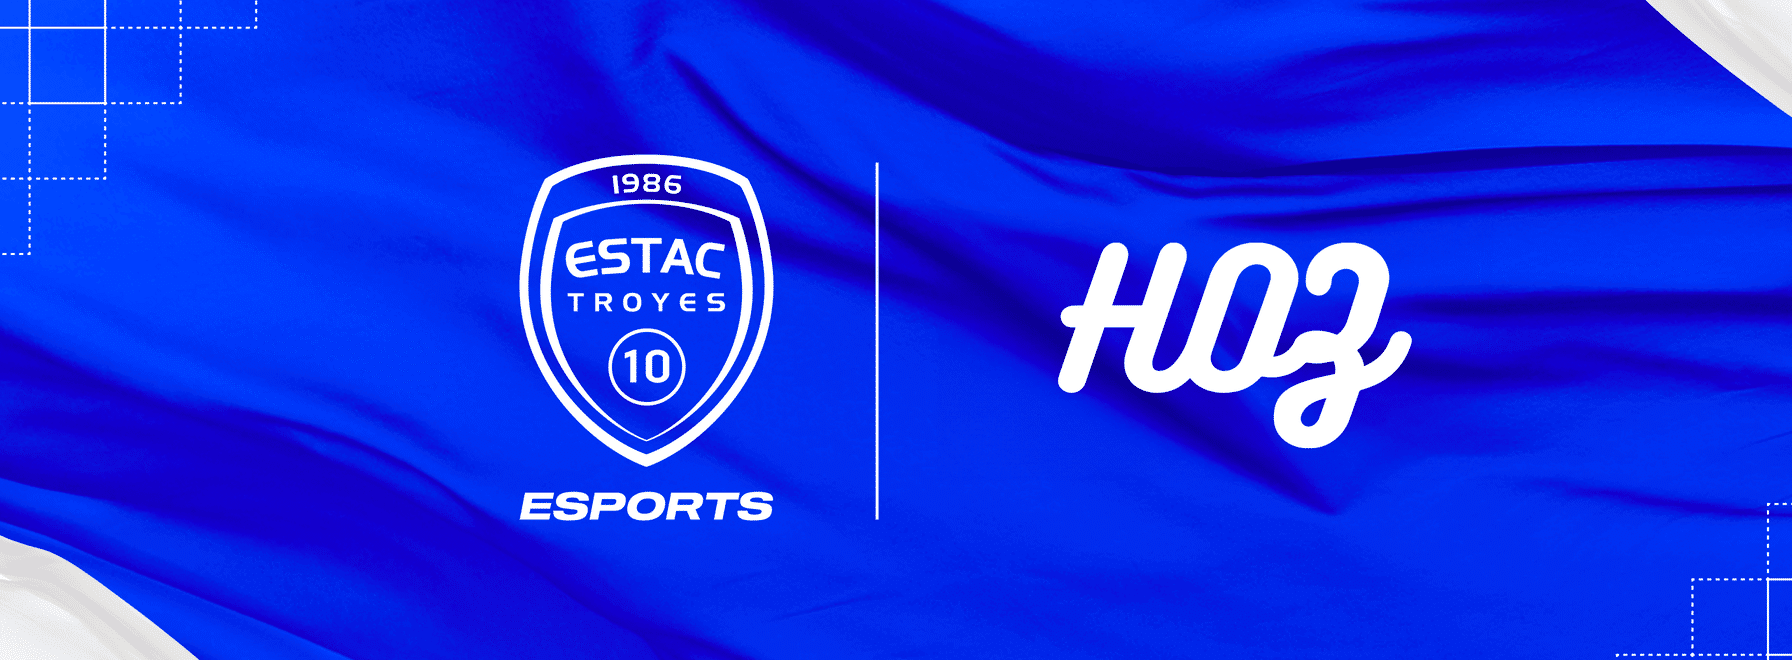 Hozvideo devient partenaire officiel de l'Estac Esports